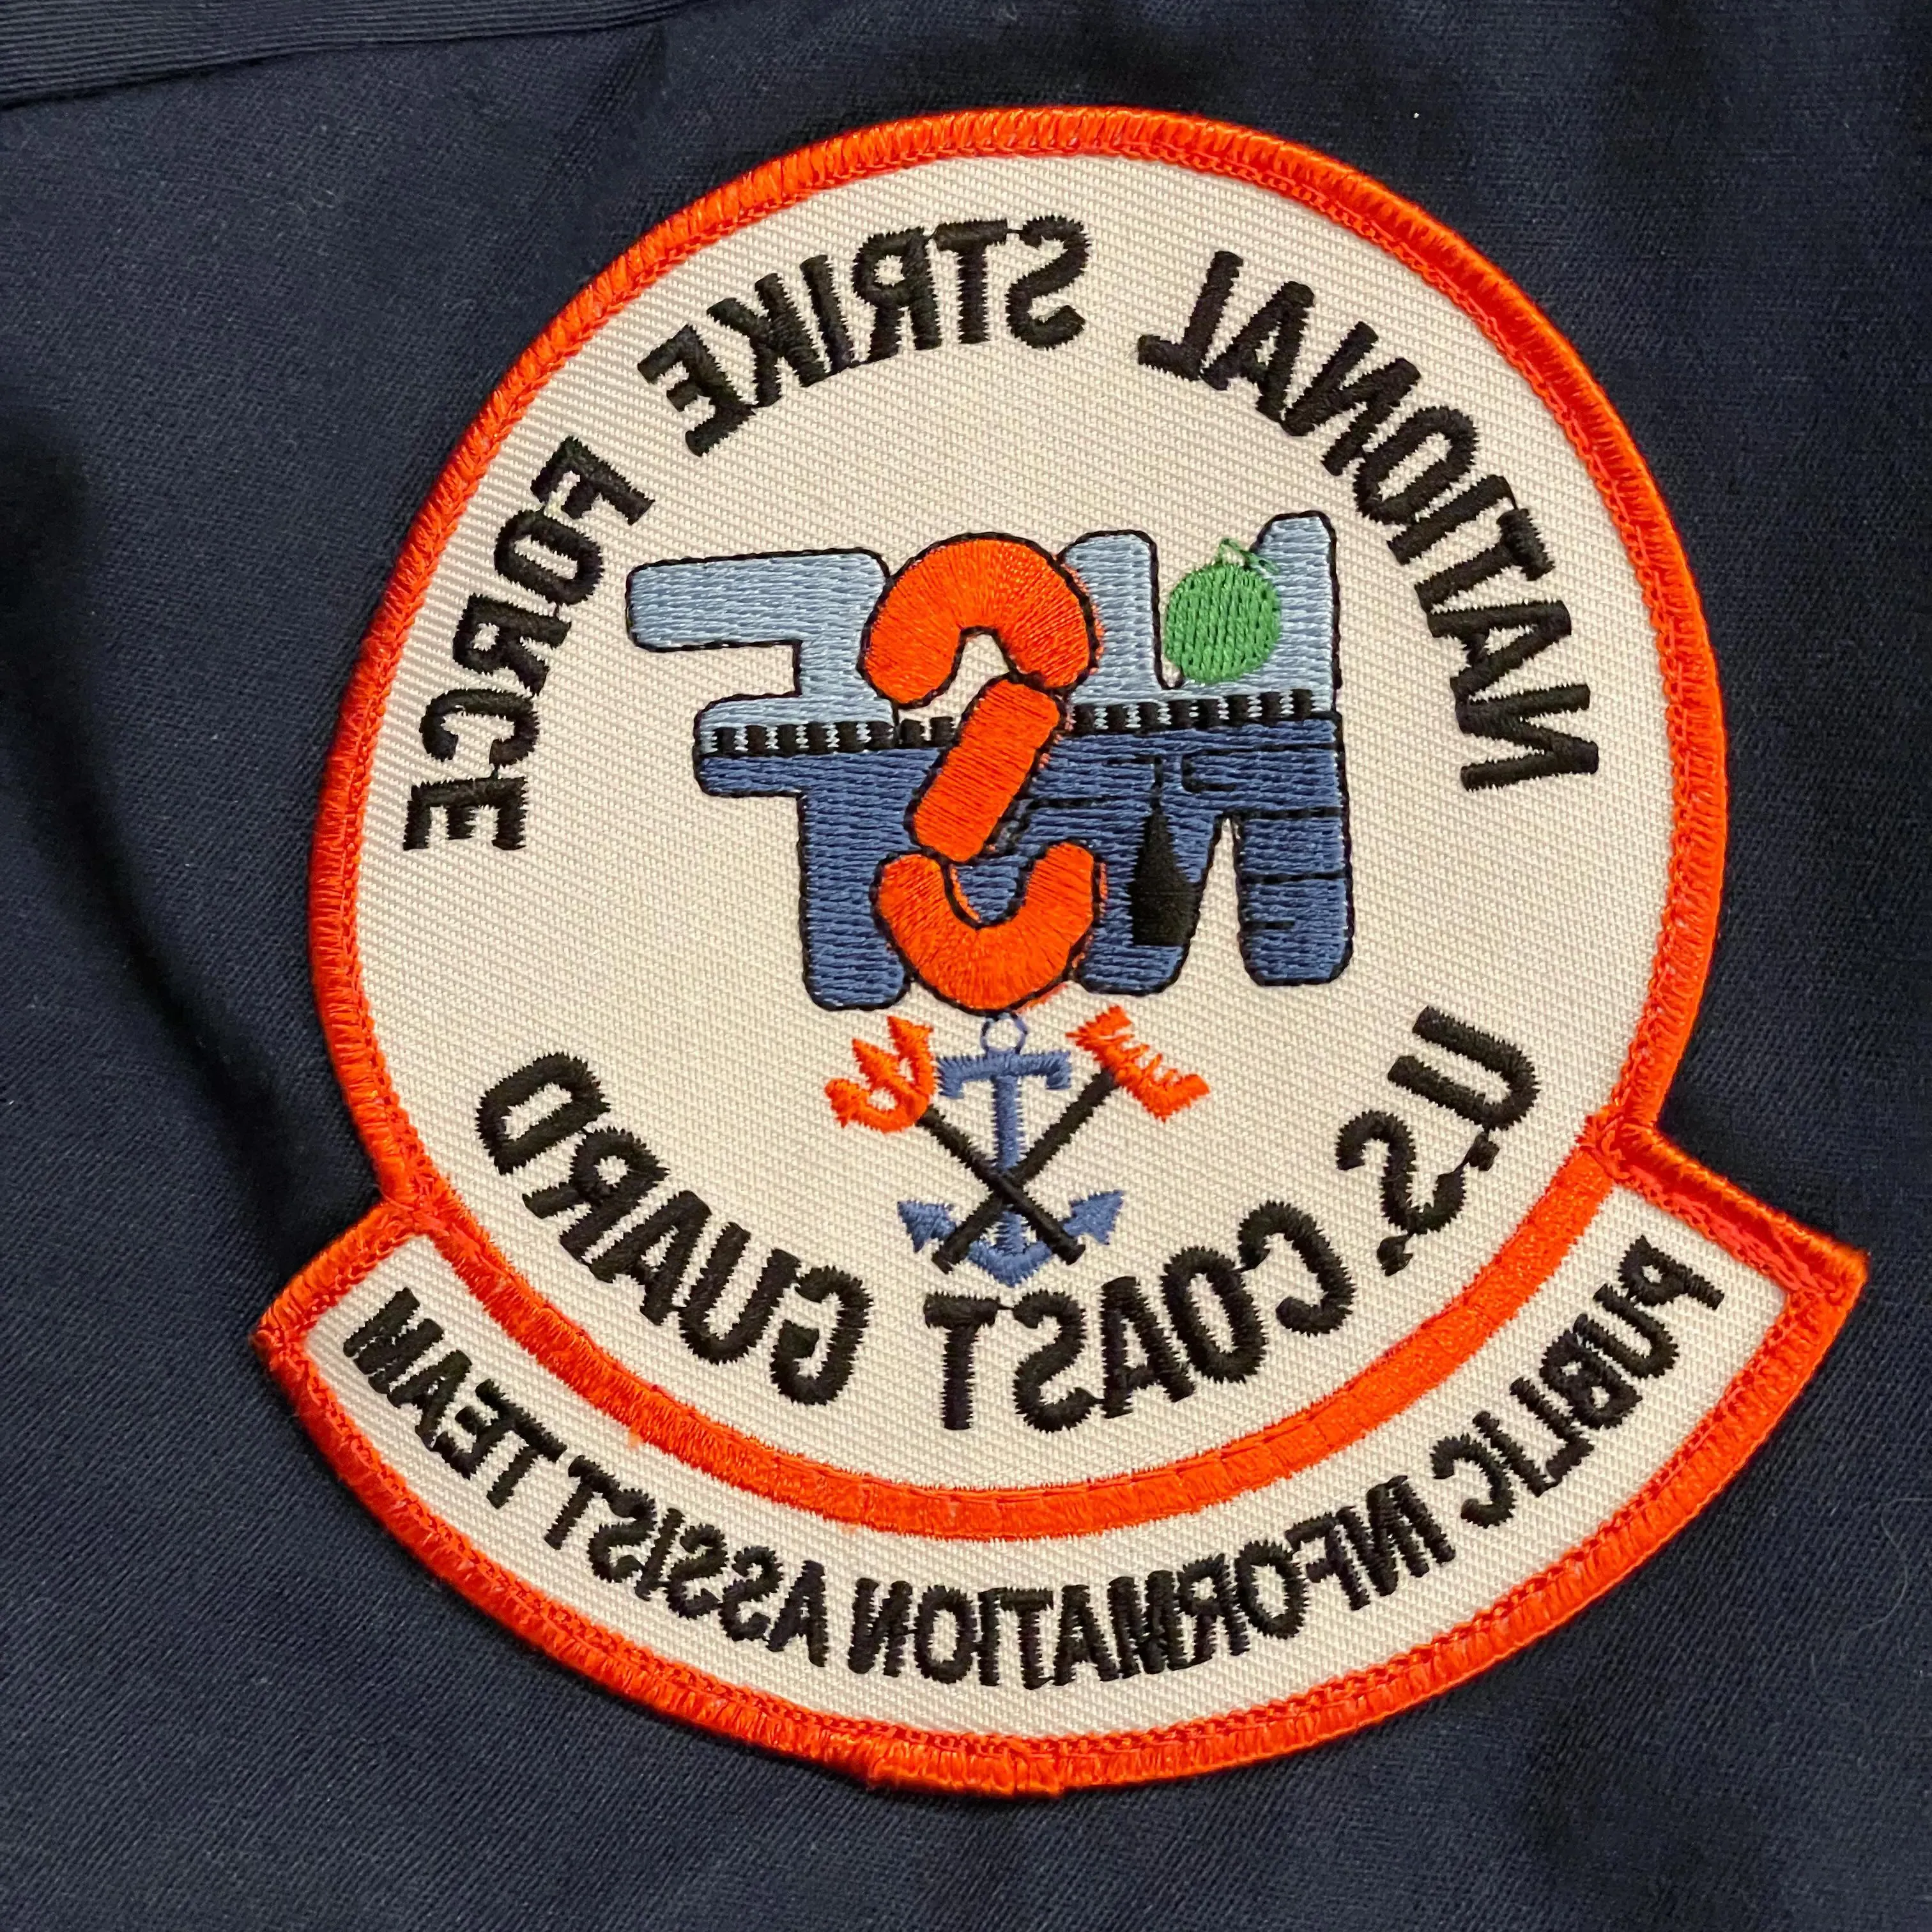 制服上的徽章，上面写着“美国国家打击部队”.S. Coast Guard. Public Information Assist Team"